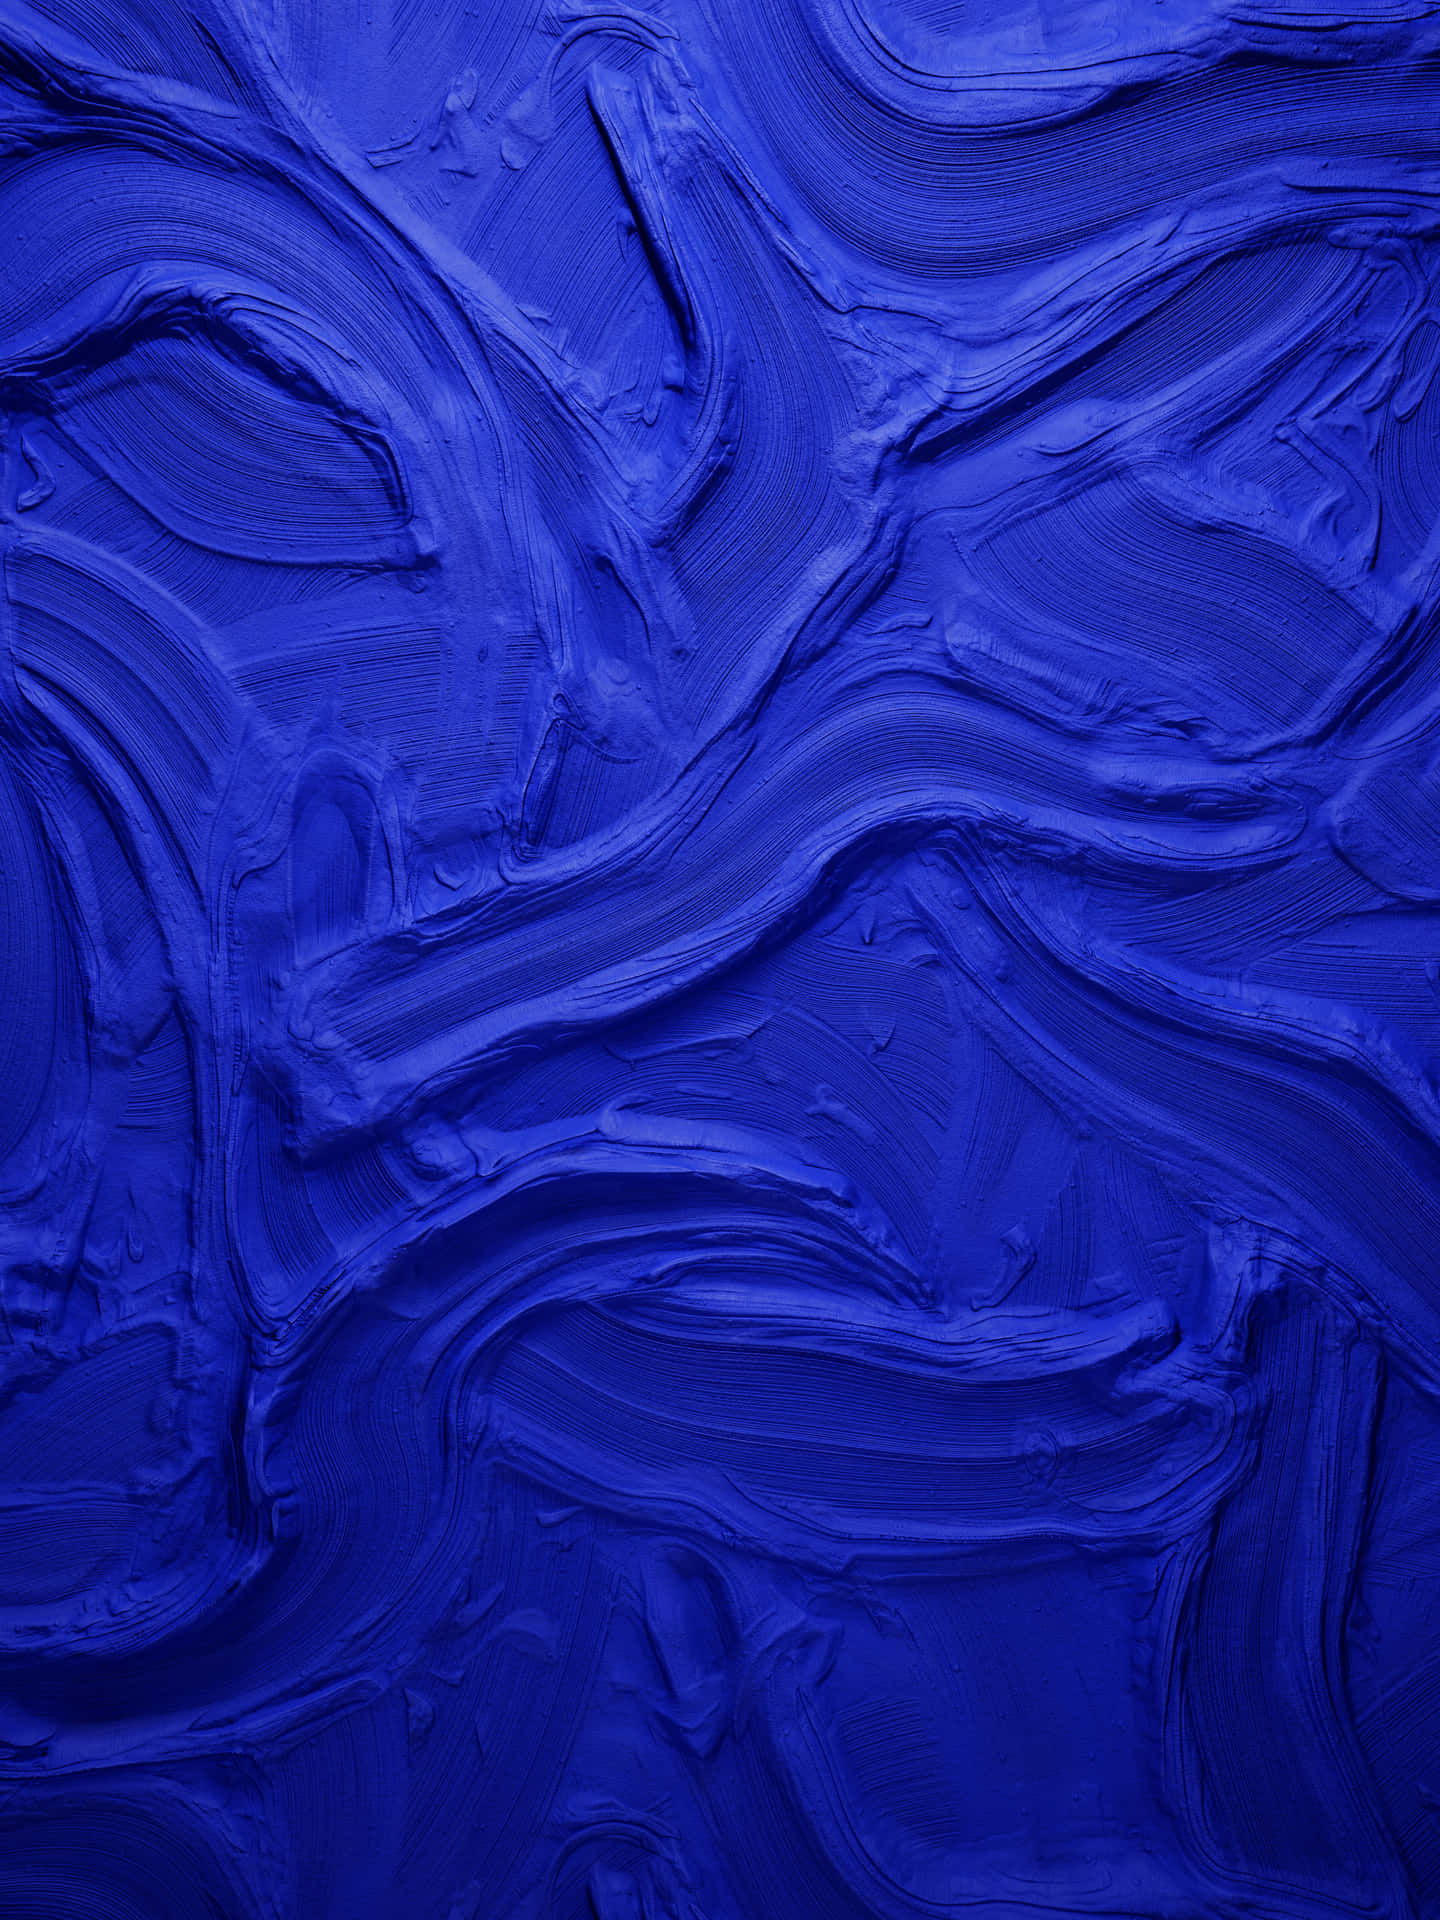 Blue Texture Canvas Pictures